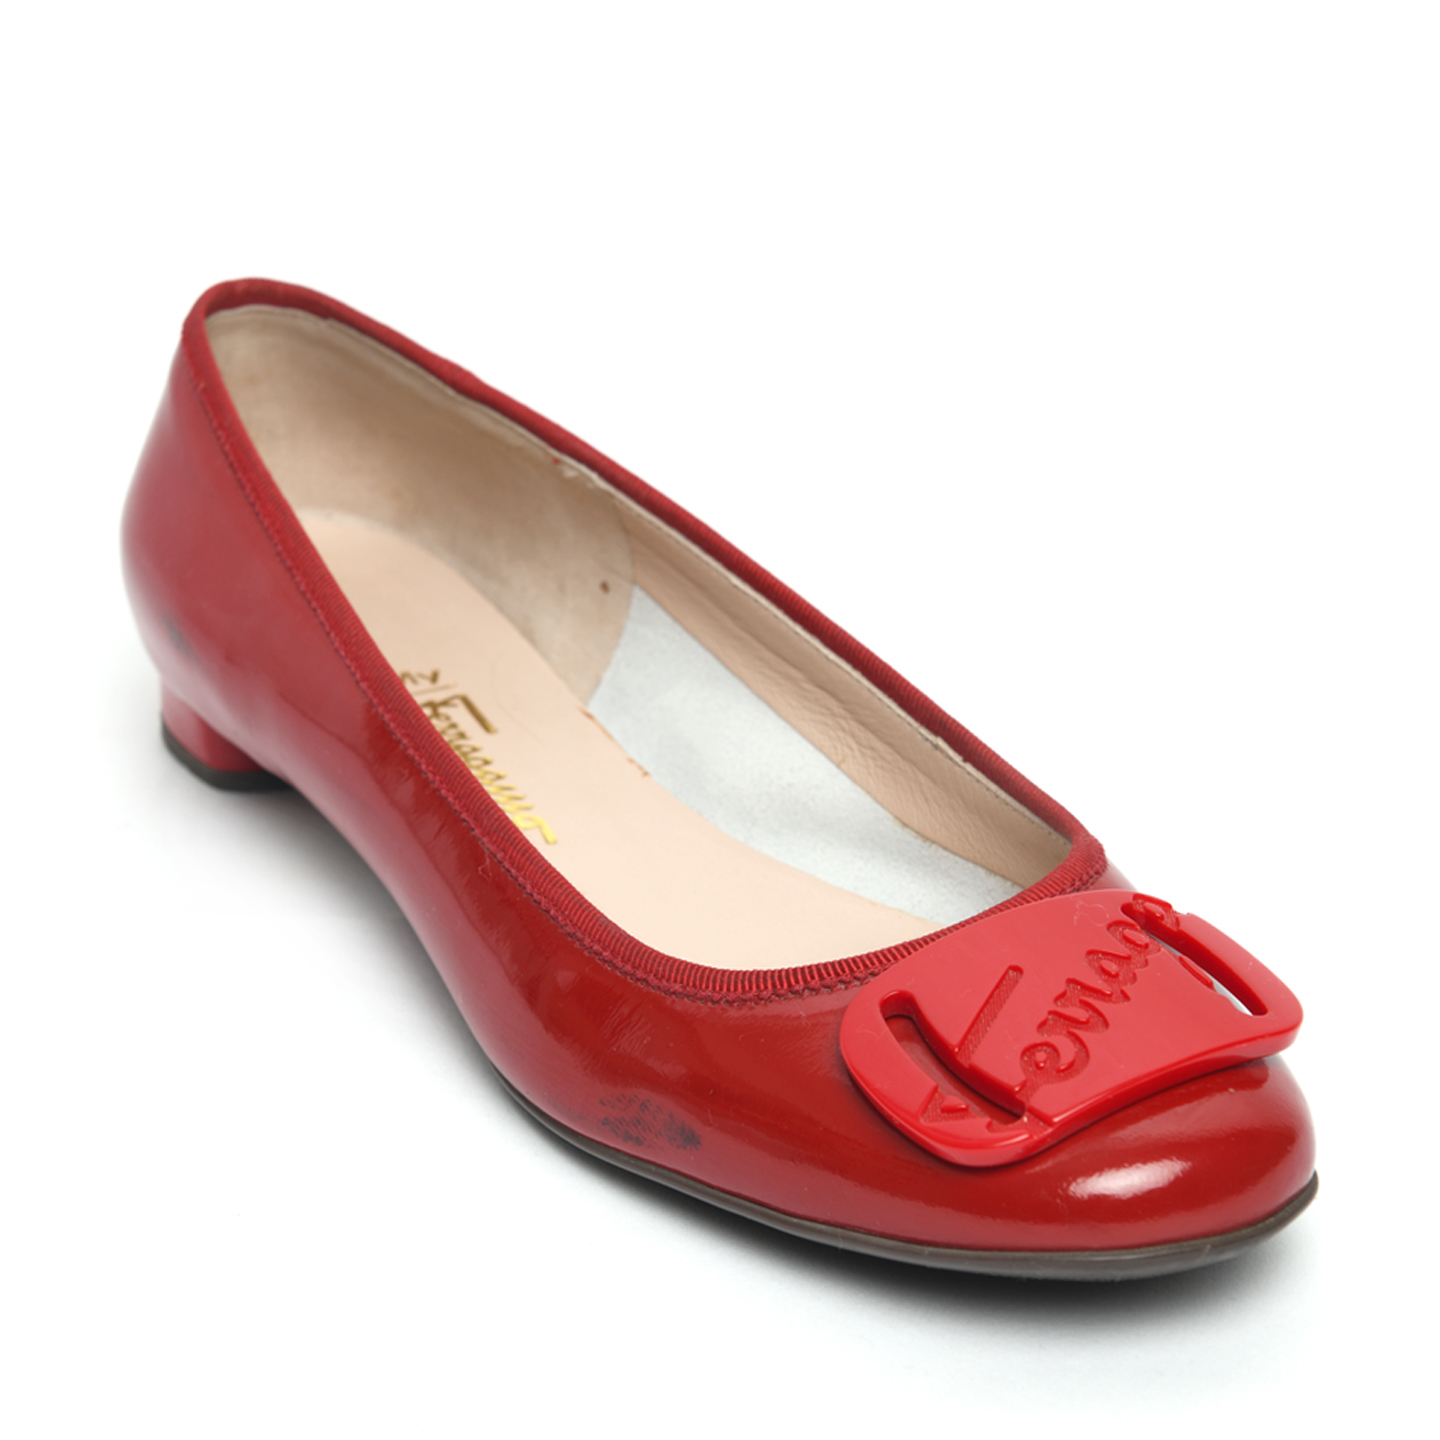 Salvatore Ferragamo Abetella Ballerina Flats in Patent Rosso, Size 37.5 ...